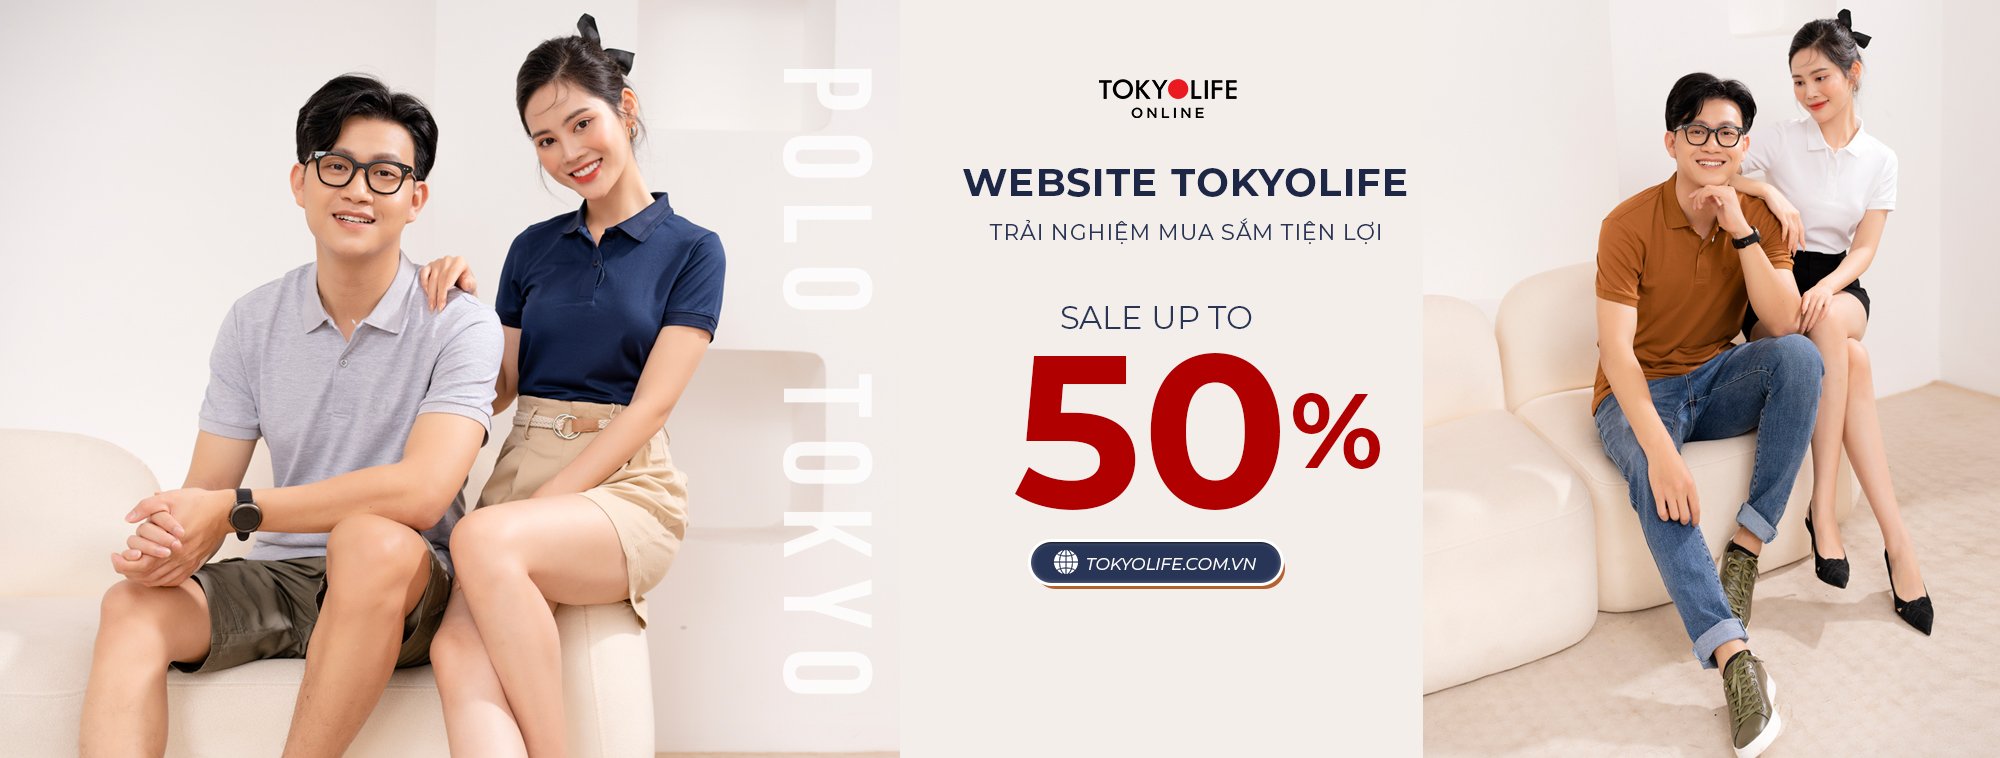 TokyoLife 1 Cửa Hàng Tiêu Dùng Chính Hãng Nhật Bản Và Thời Trang Thông Minh, Phụ Kiện Giày, Túi, Ví, Balo Và Thời Trang Hiệu Tokyolife, Tokyobasic